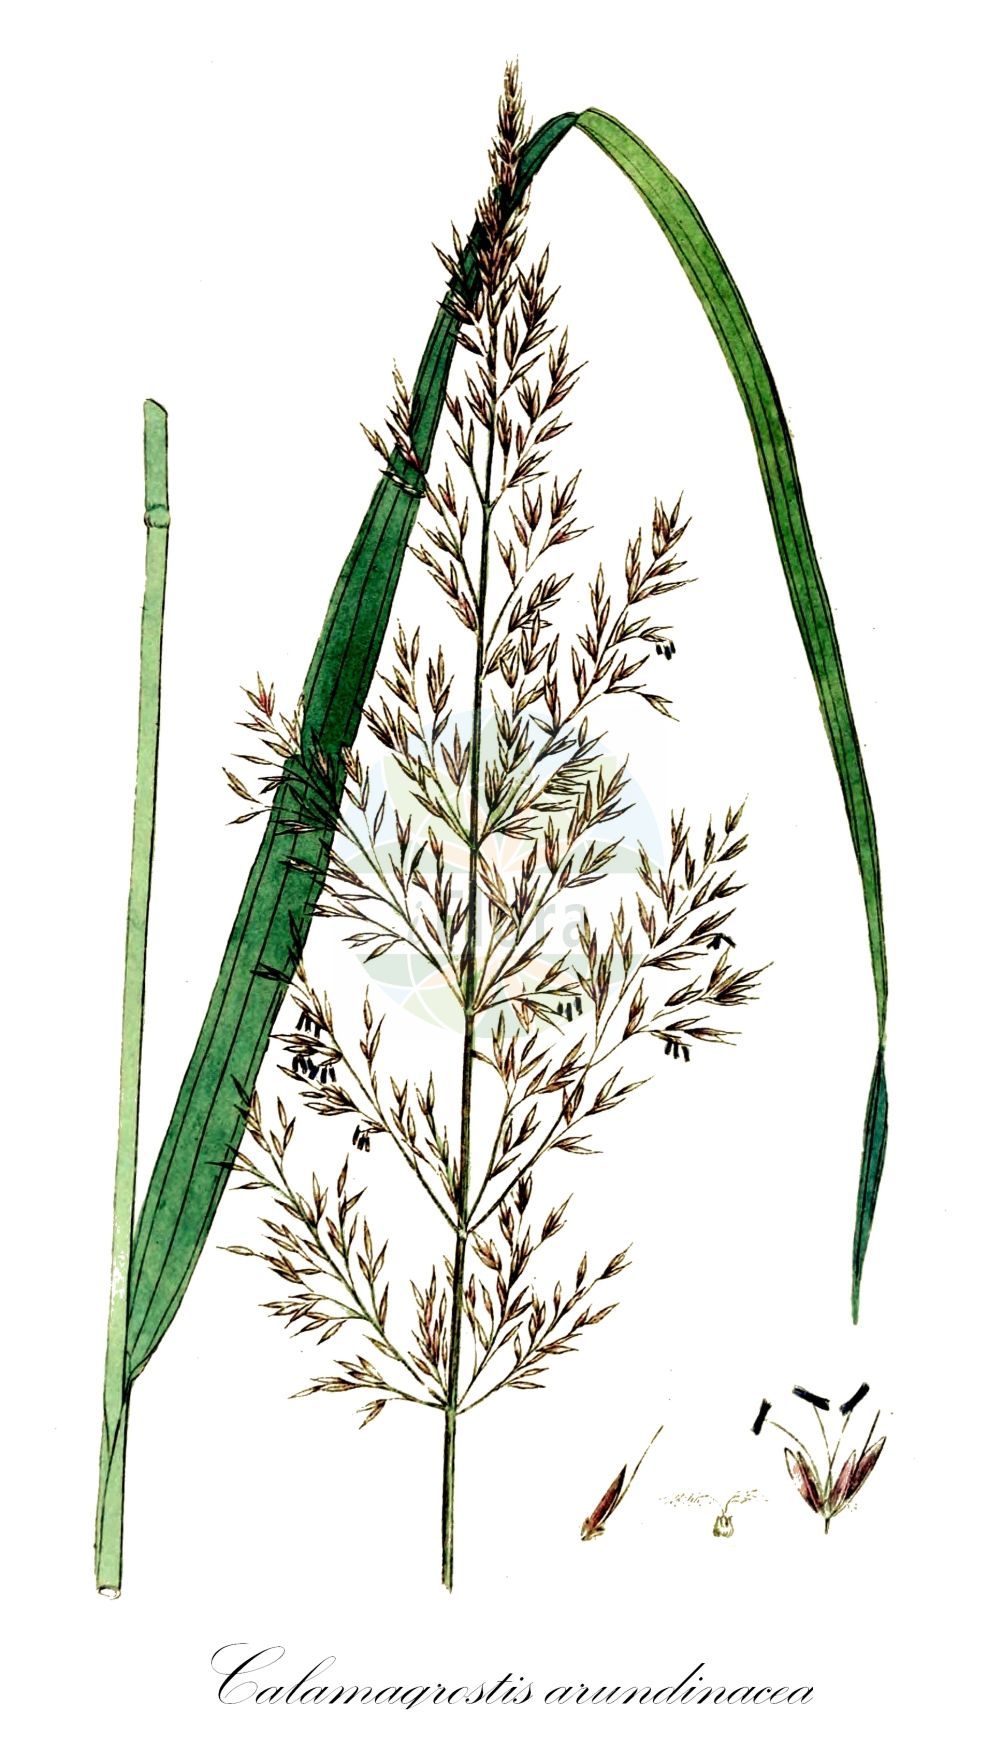 Historische Abbildung von Calamagrostis arundinacea (Wald-Reitgras - Bunch Grass). Das Bild zeigt Blatt, Bluete, Frucht und Same. ---- Historical Drawing of Calamagrostis arundinacea (Wald-Reitgras - Bunch Grass). The image is showing leaf, flower, fruit and seed.(Calamagrostis arundinacea,Wald-Reitgras,Bunch Grass,Agrostis arundinacea,Arundo sylvatica,Calamagrostis arundinacea,Deyeuxia arundinacea,Deyeuxia pyramidalis,Wald-Reitgras,Bunch Grass,Purple Reedgrass,Rough Smallreed,Korean Feather Reed Grass,Calamagrostis,Reitgras,Reedgrass,Poaceae,Süßgräser,Grass family,Blatt,Bluete,Frucht,Same,leaf,flower,fruit,seed,Svensk Botanik (Svensk Botanik))